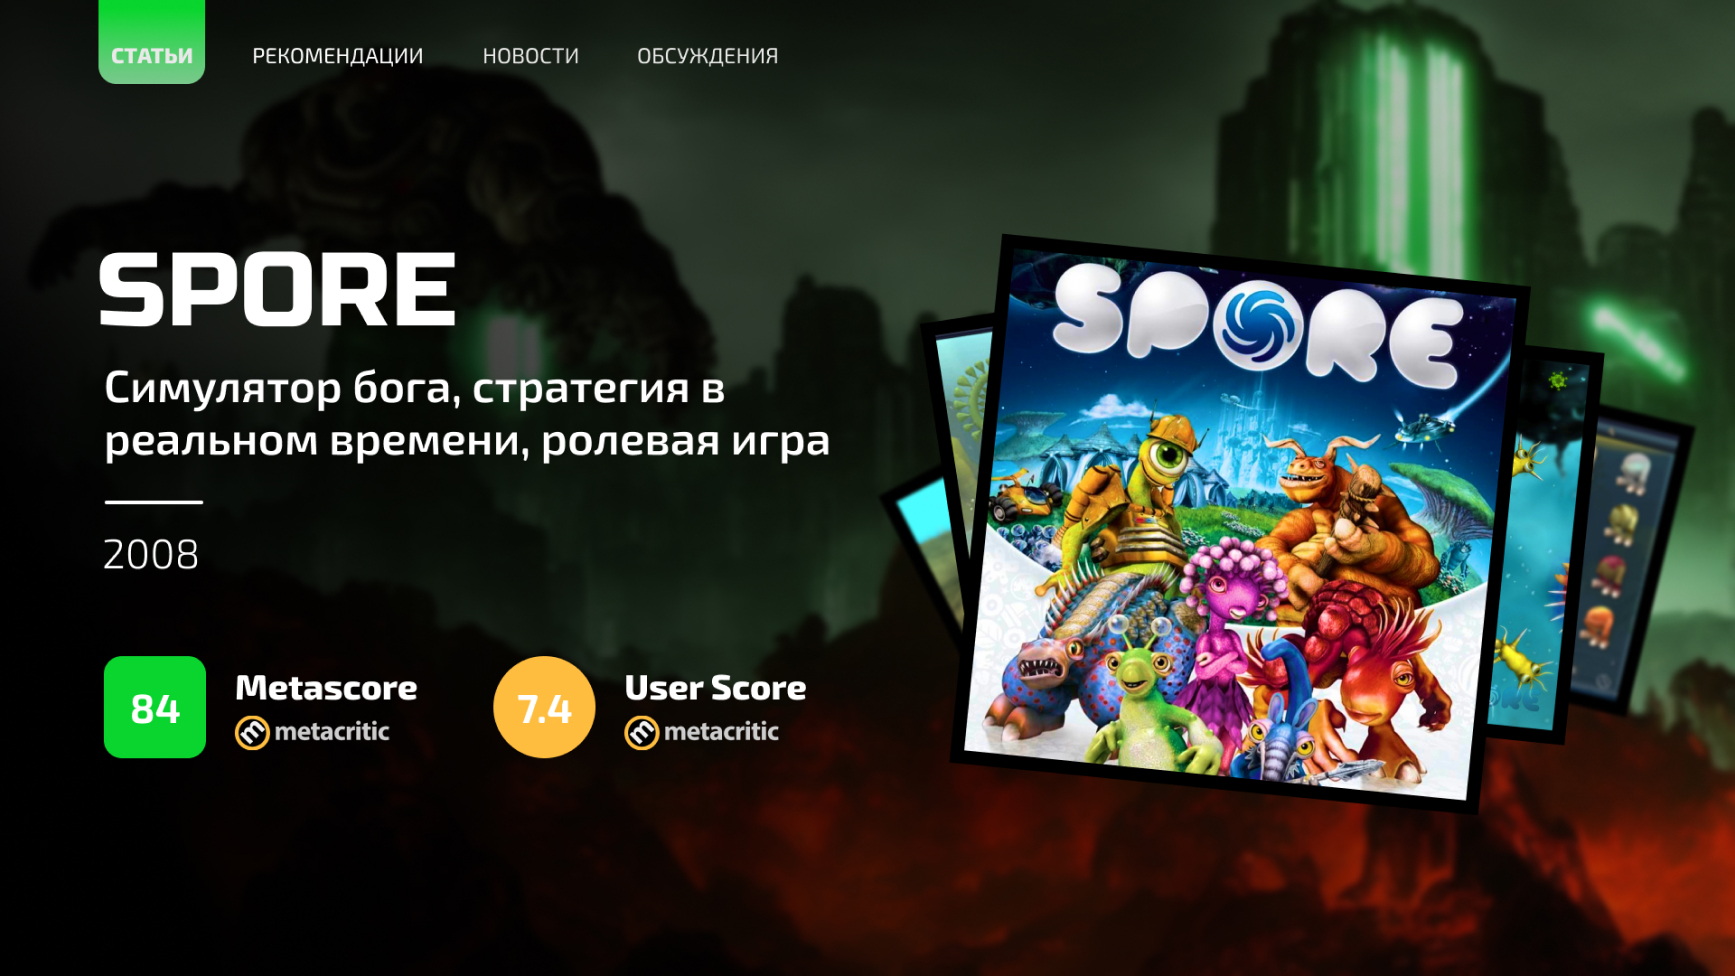 Spore – игровая песочница с безграничным потенциалом